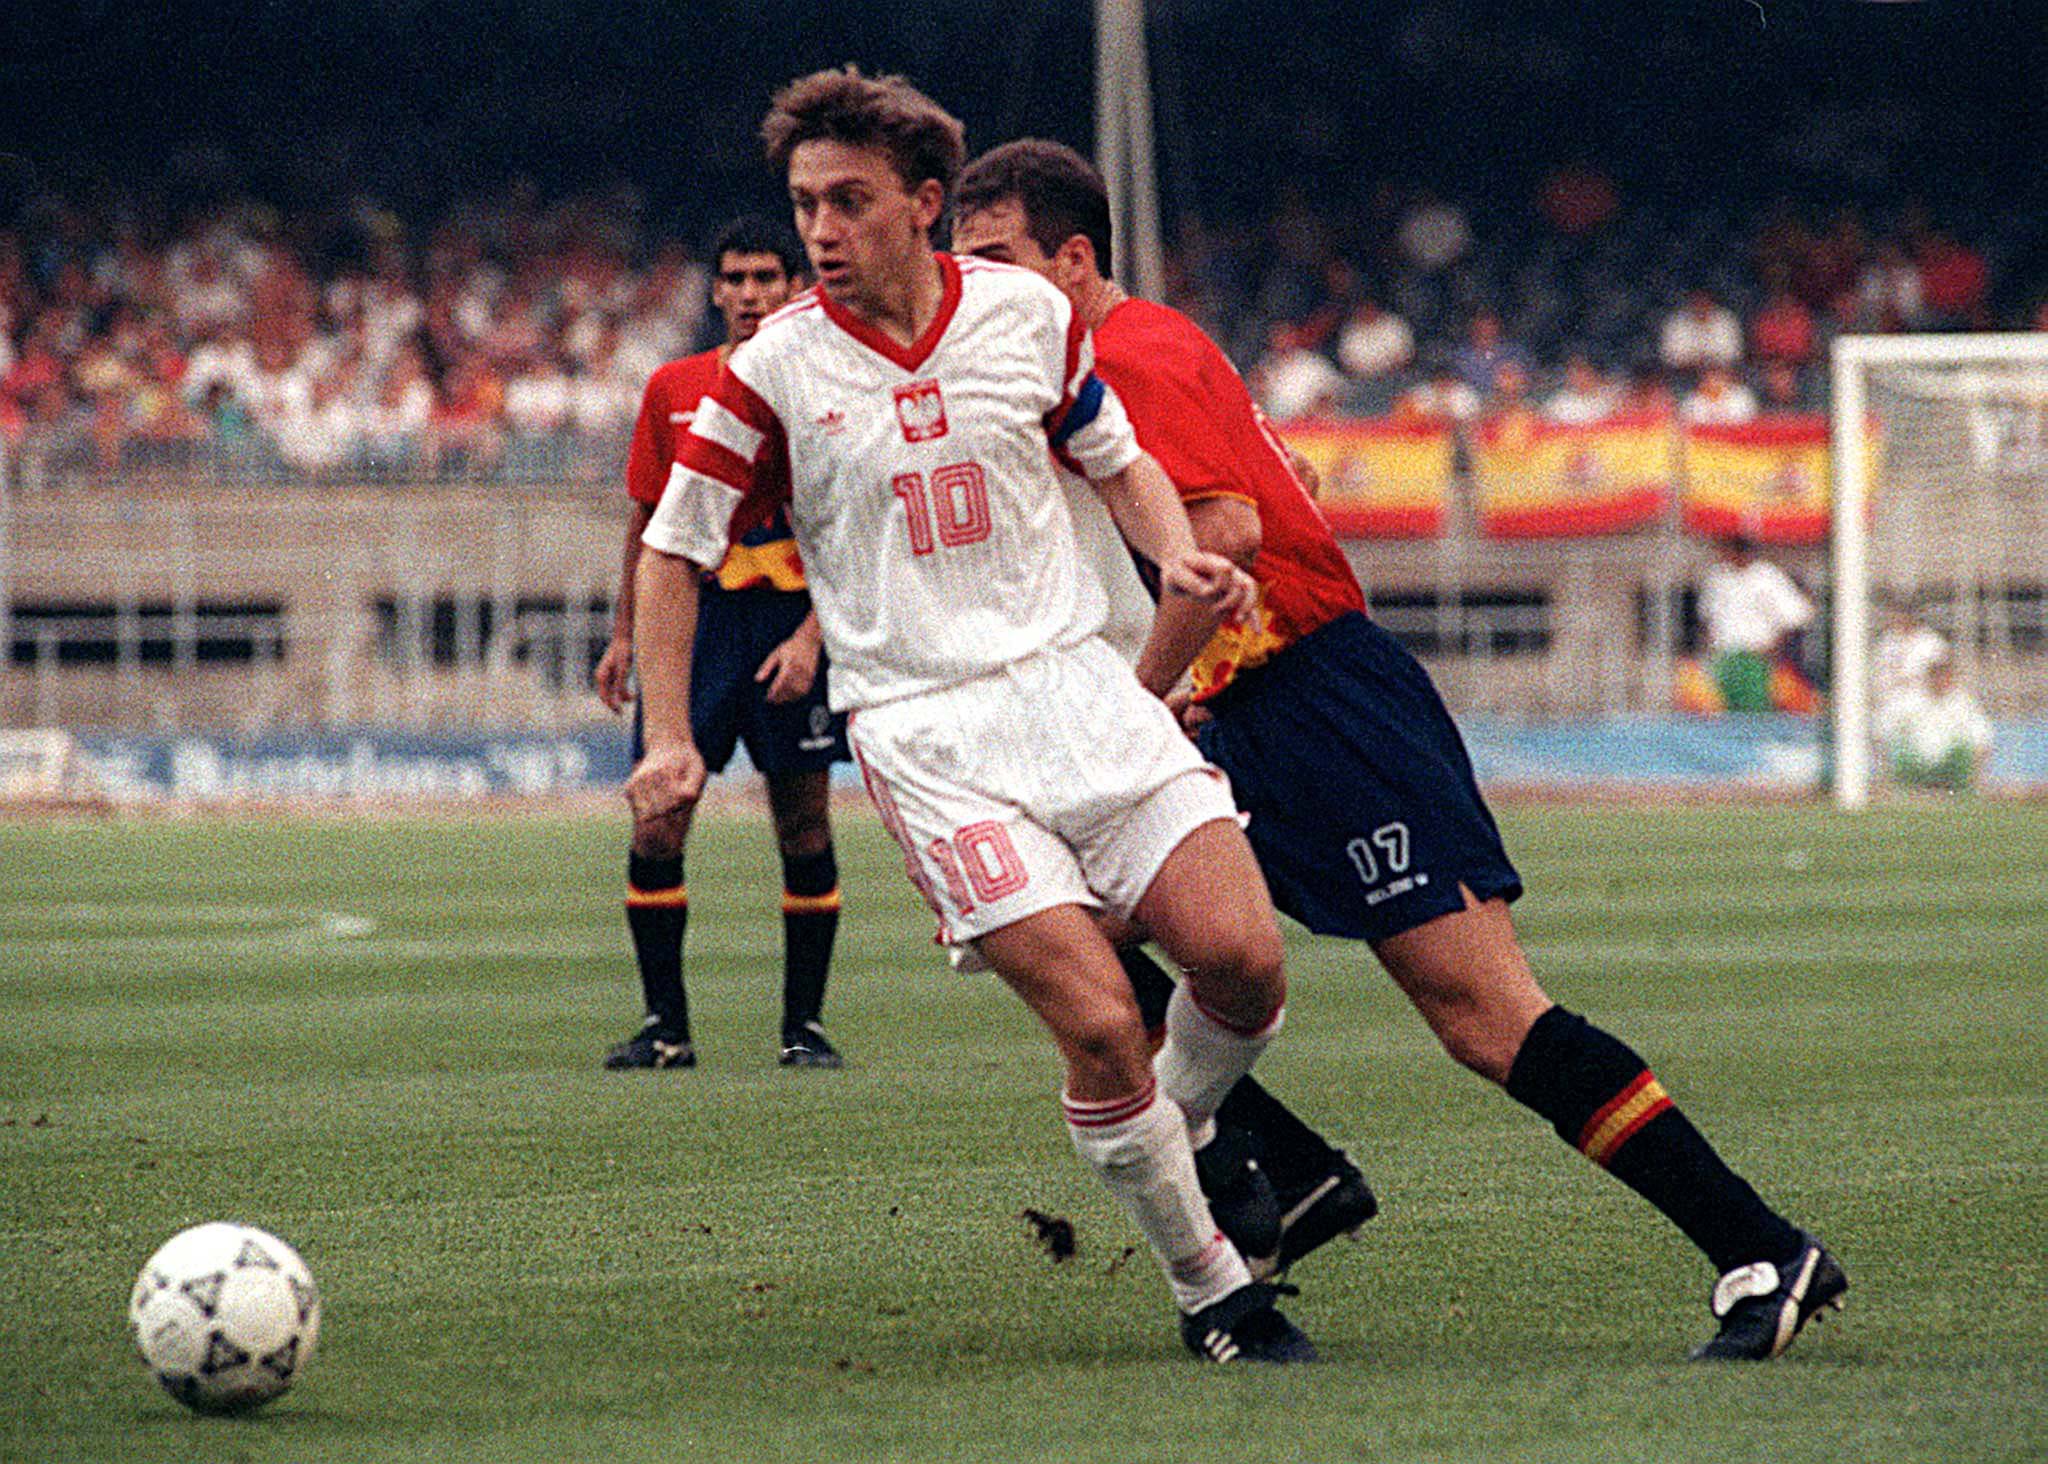 Jerzy Brzęczek podczas finału igrzysk olimpijskich w 1992 roku w Barcelonie (2:3 z Hiszpanią).